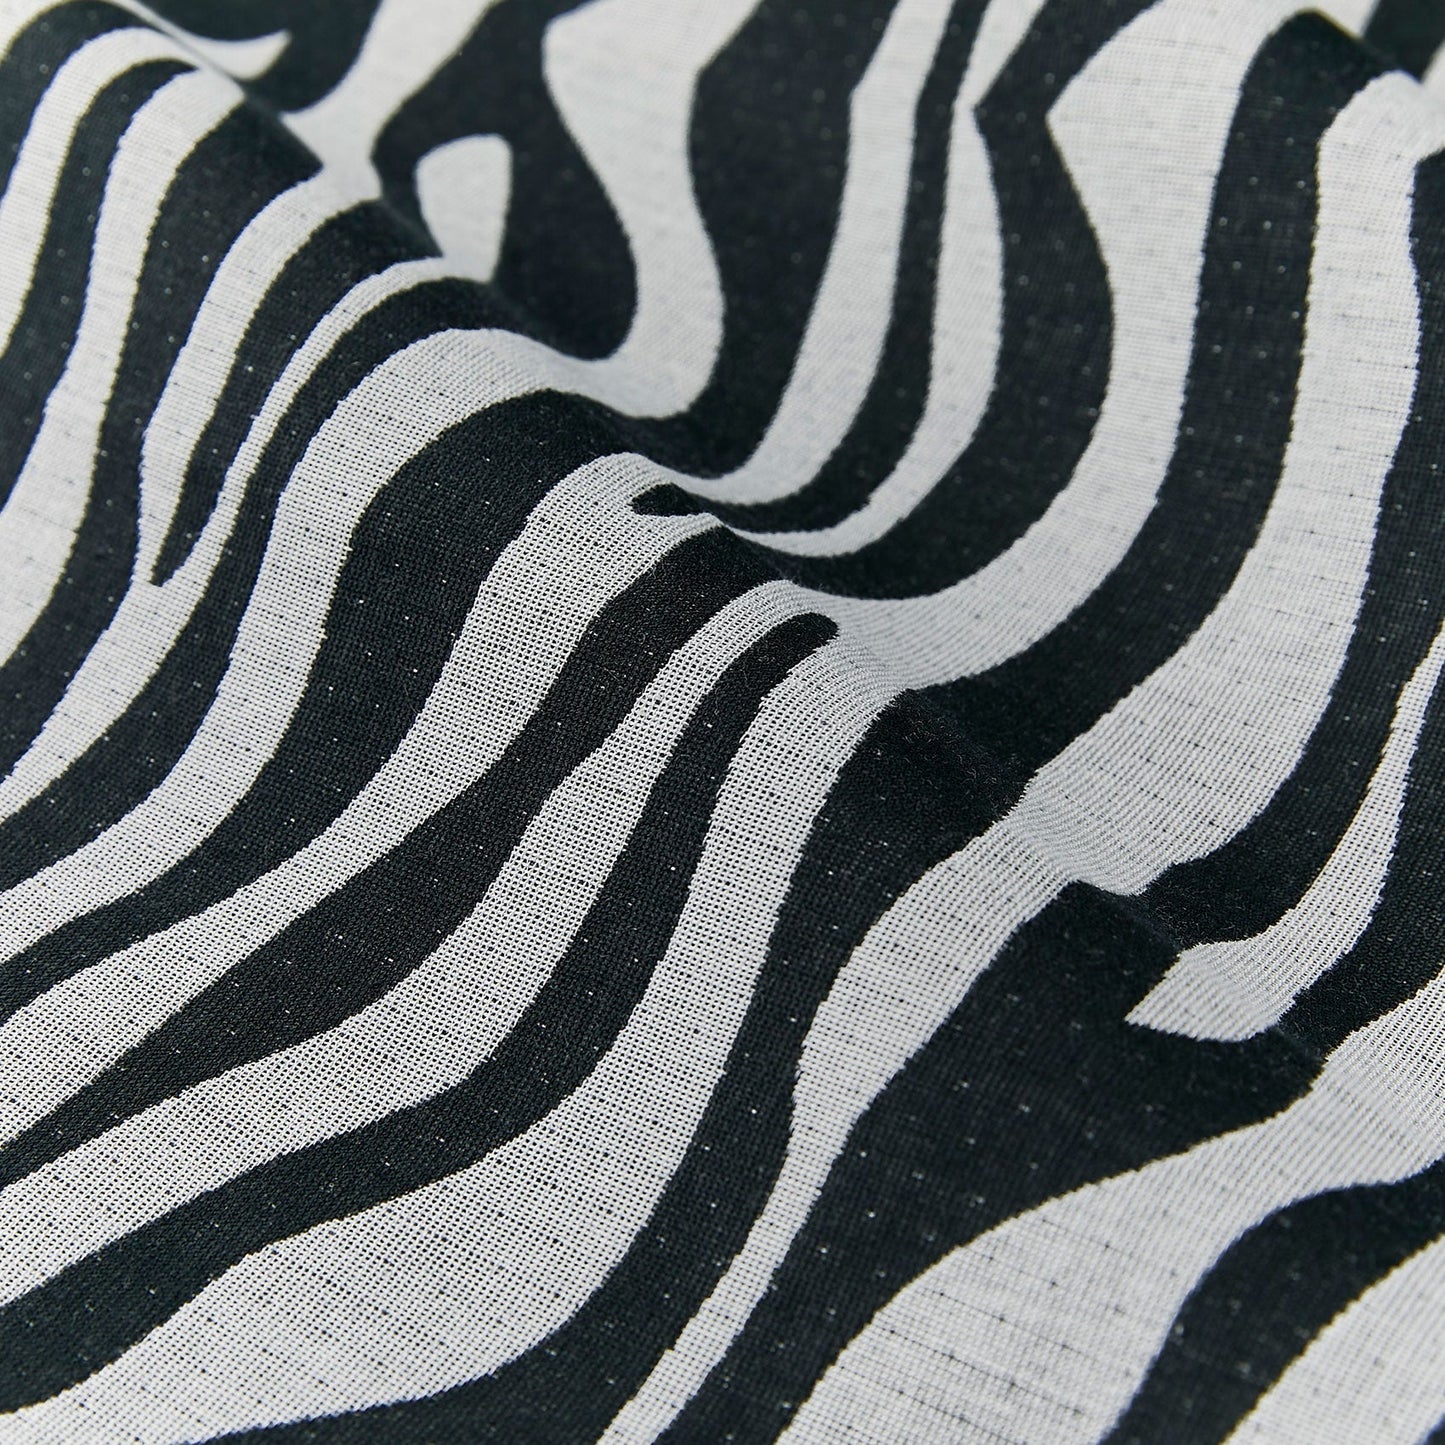 2026年 成人式振袖レンタル 「Zebra (帯ベルト)」